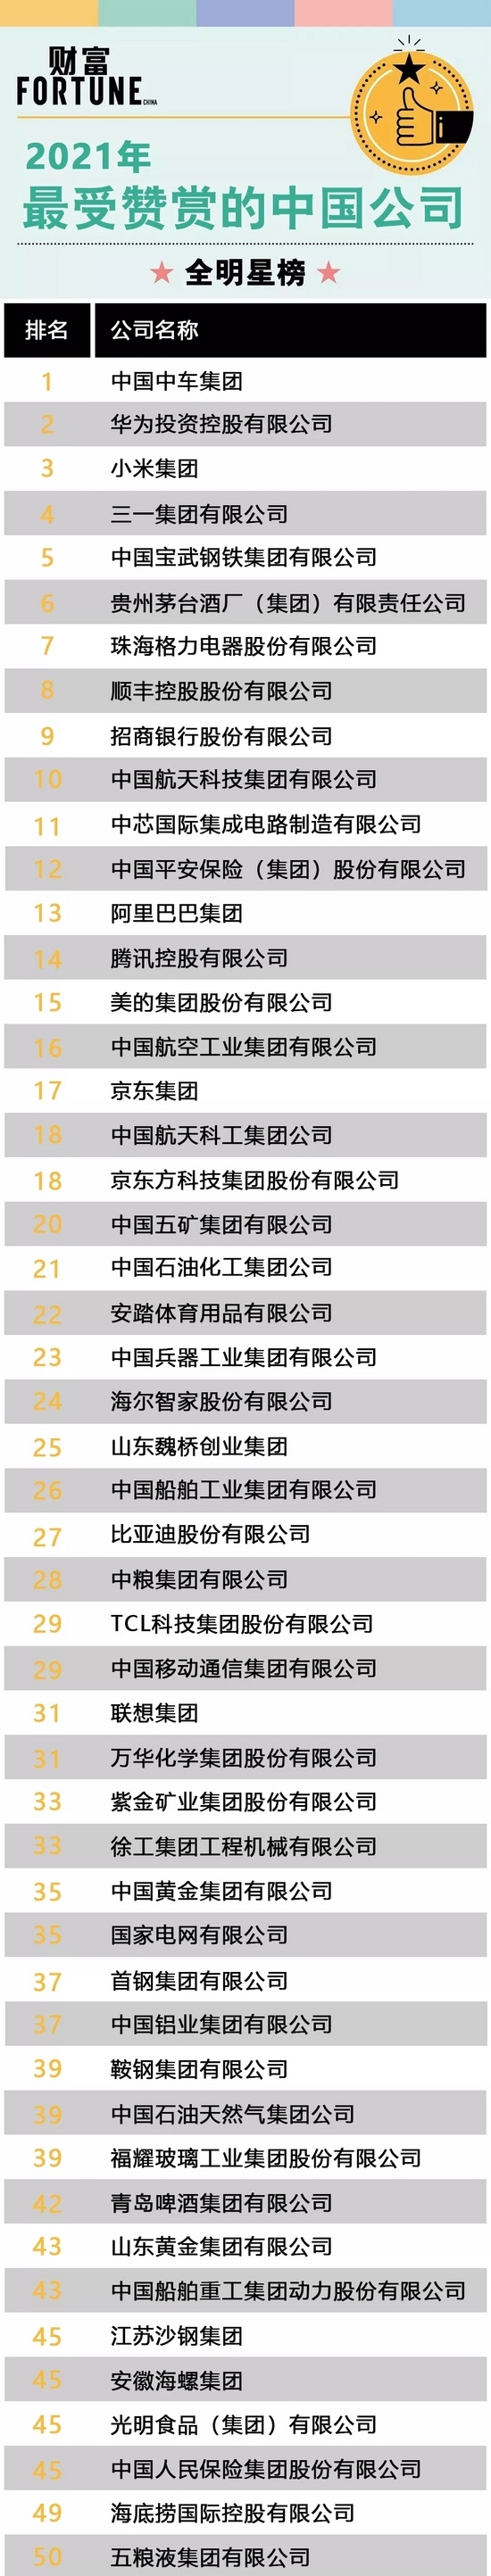 三一集团位列2021《财富》“最受欢迎中国公司”榜单第四名